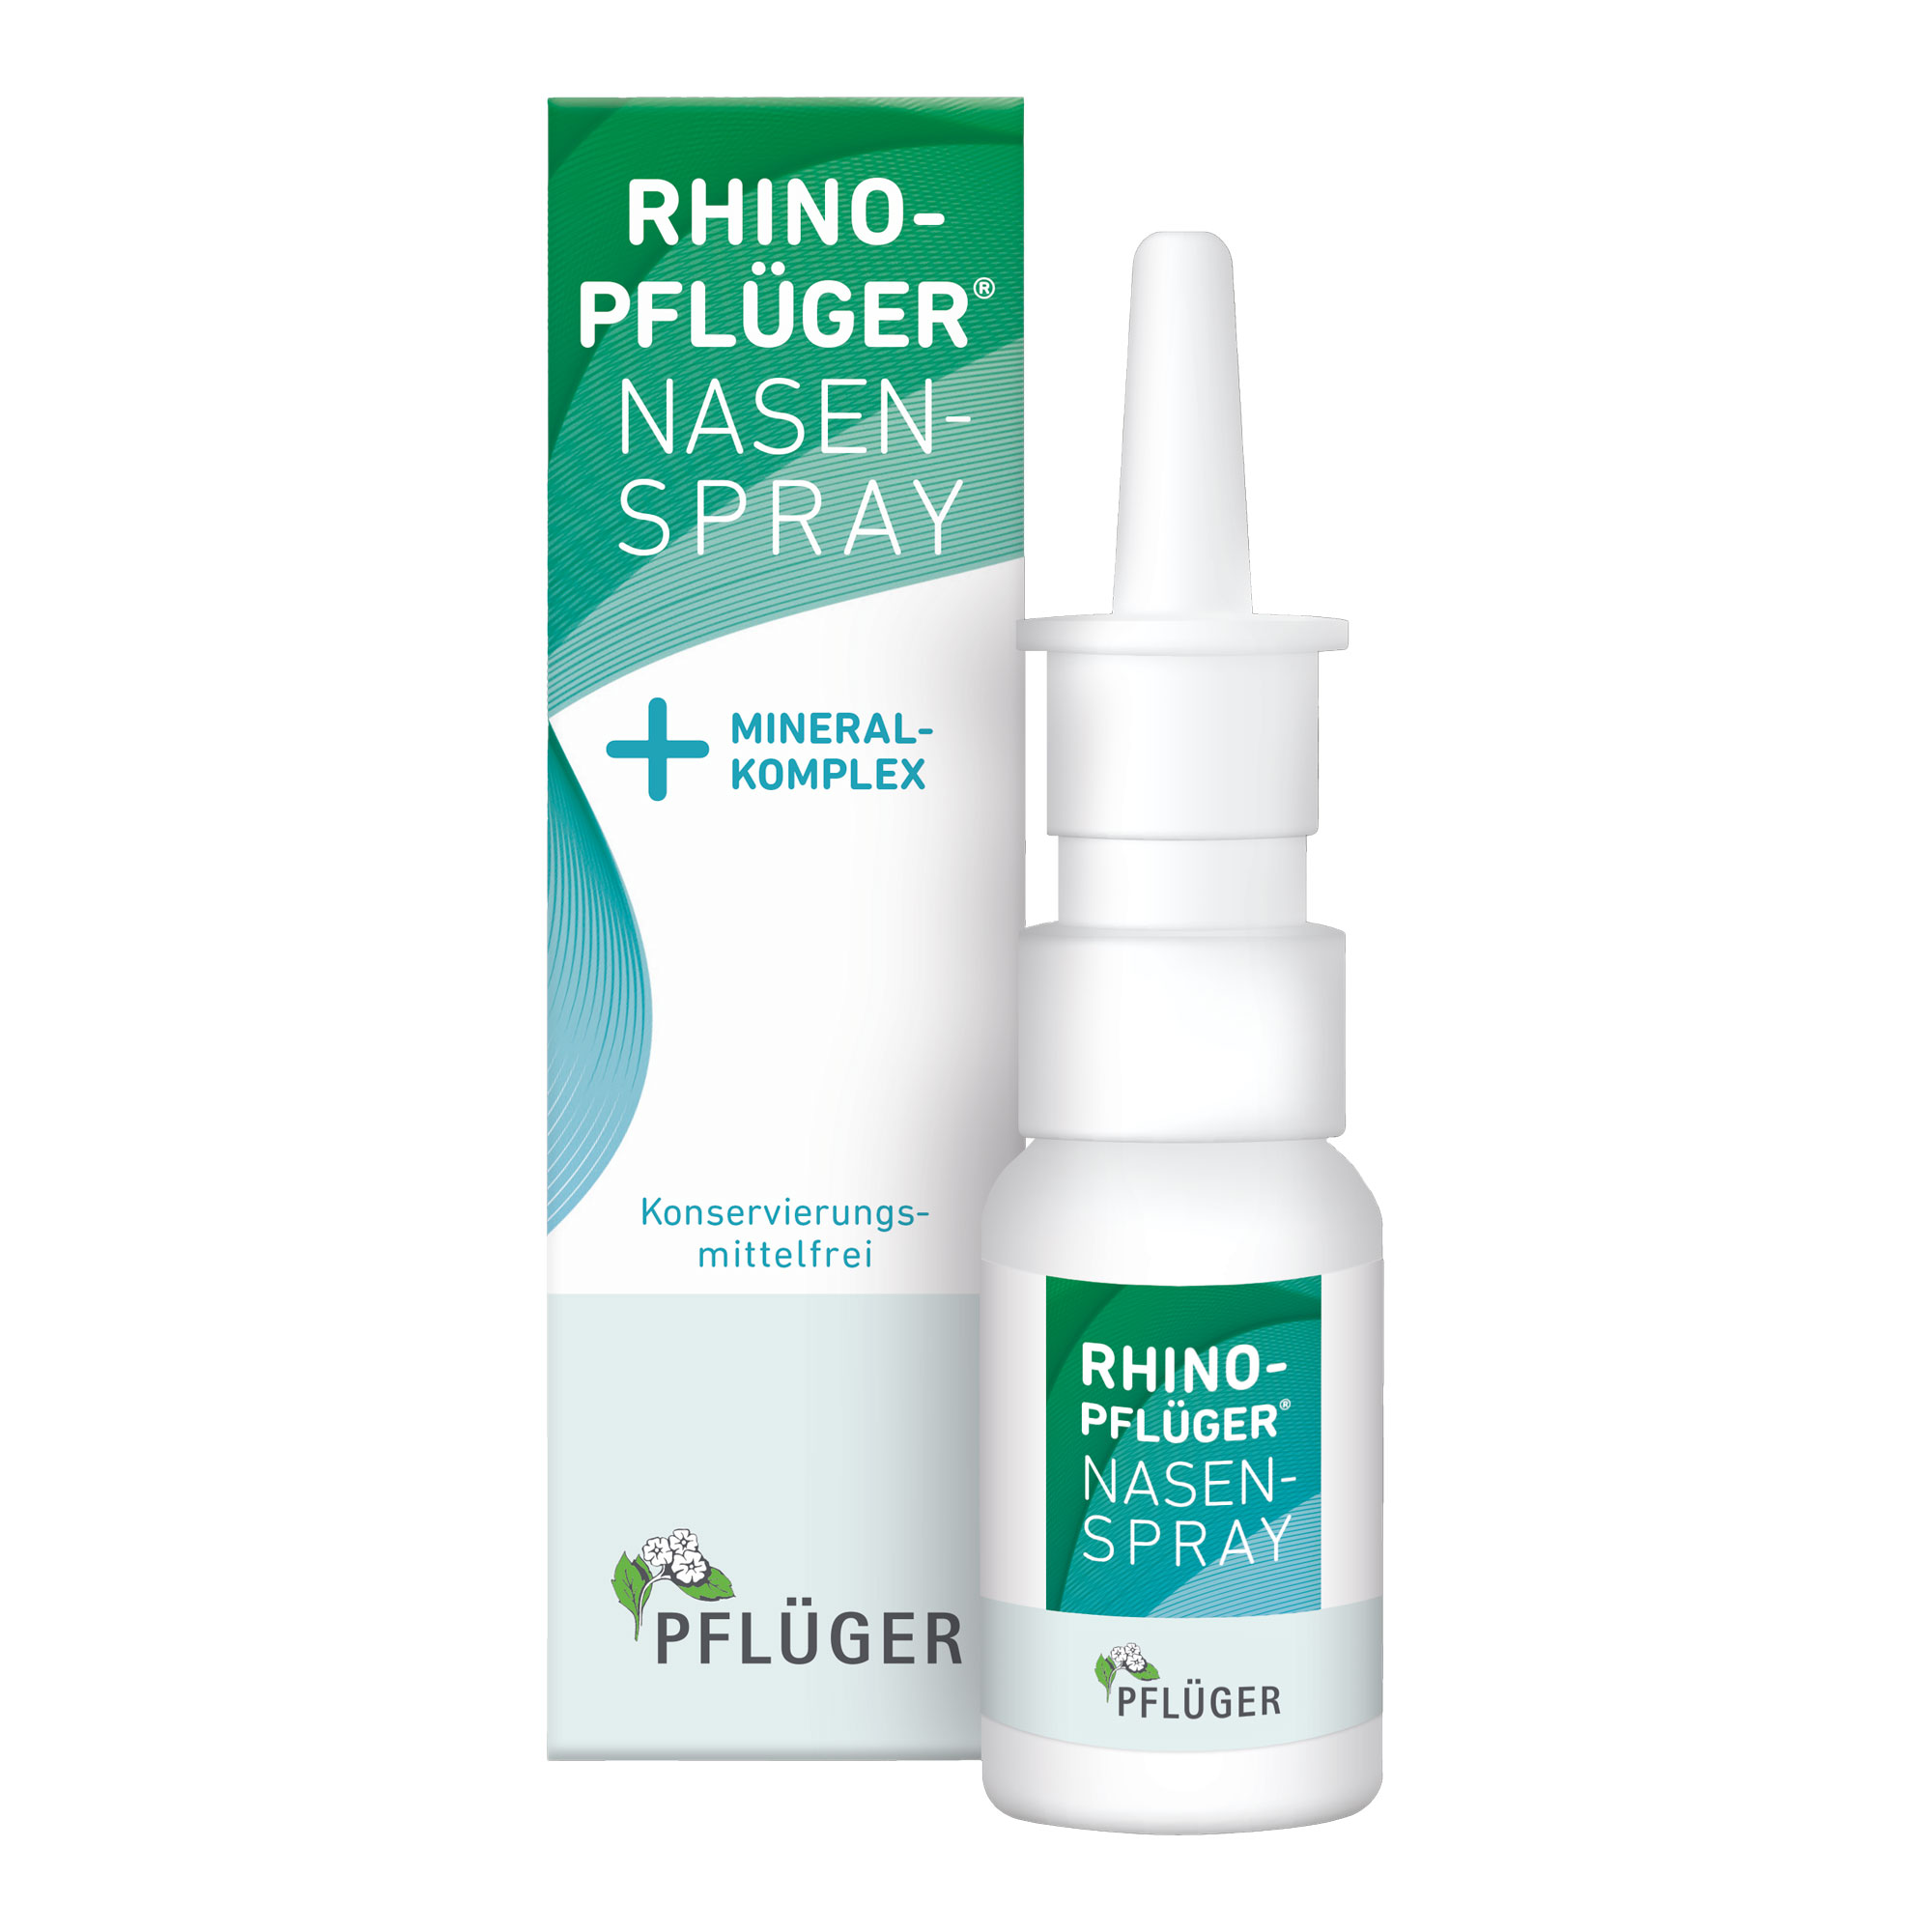 Zur unterstützenden Behandlung bei verstopfter Nase und zur Reinigung und Befeuchtung der Nasenschleimhaut.